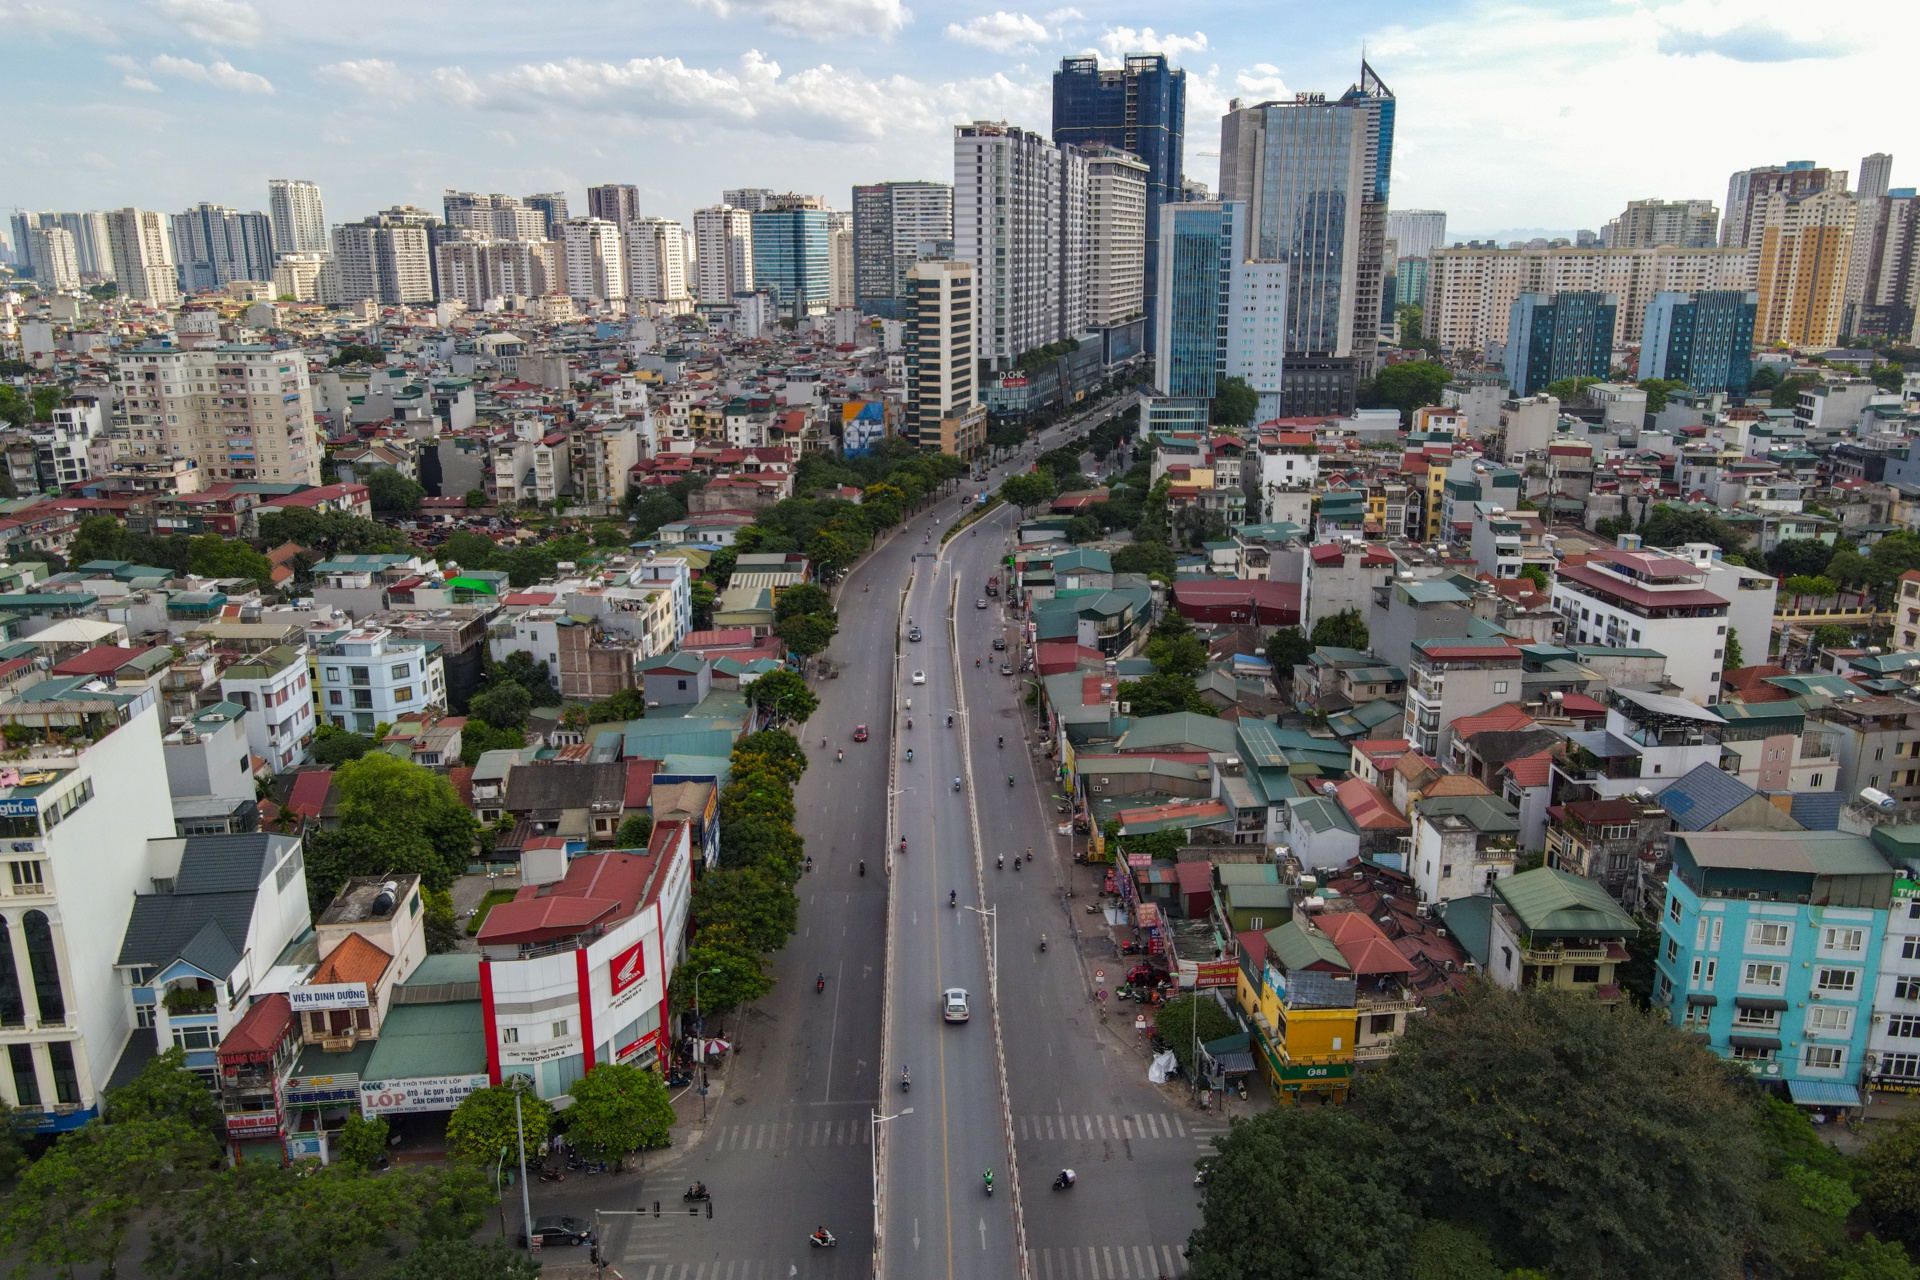 Đường phố Hà Nội nhìn từ trên cao ngày nóng 39 độ C - Ảnh 4.